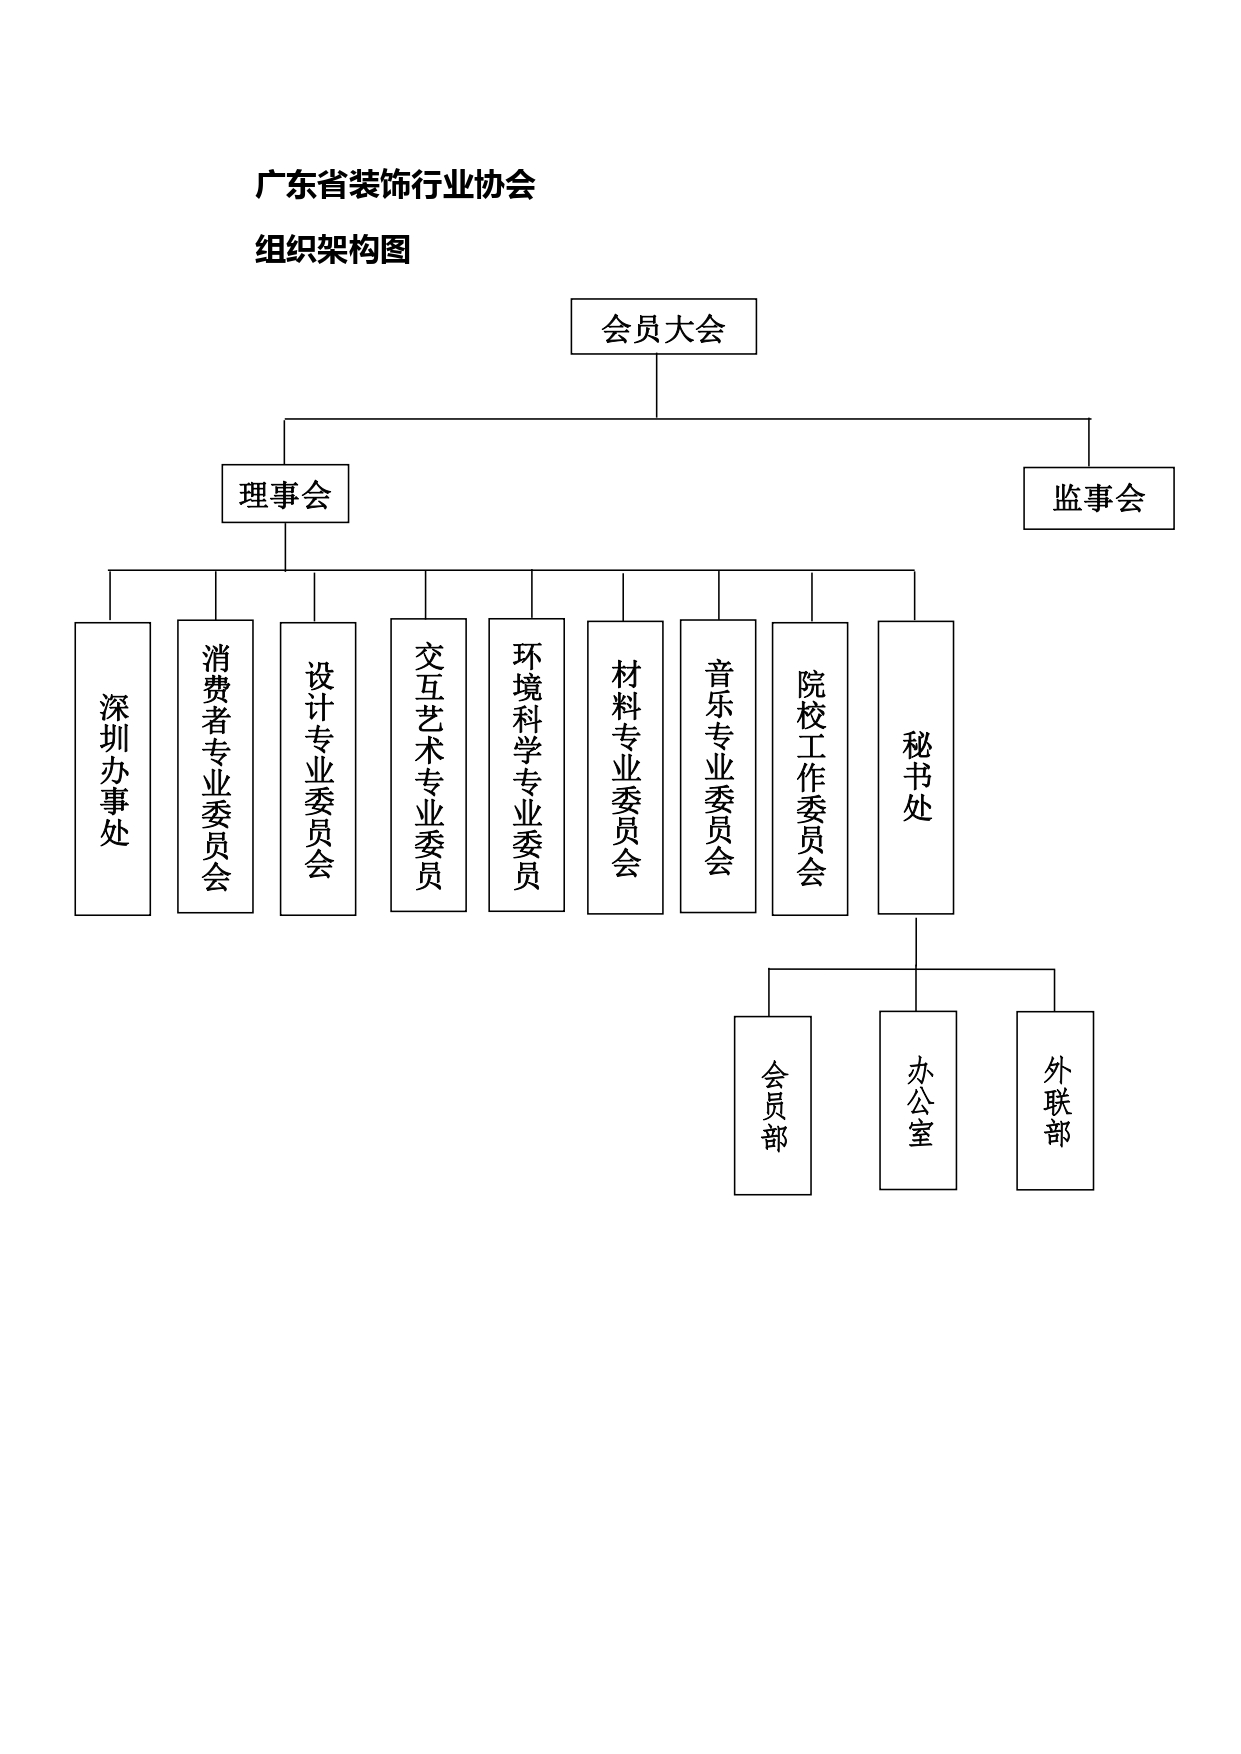 广东省德赢备用网址行业协会组织架构图_page-0001.jpg